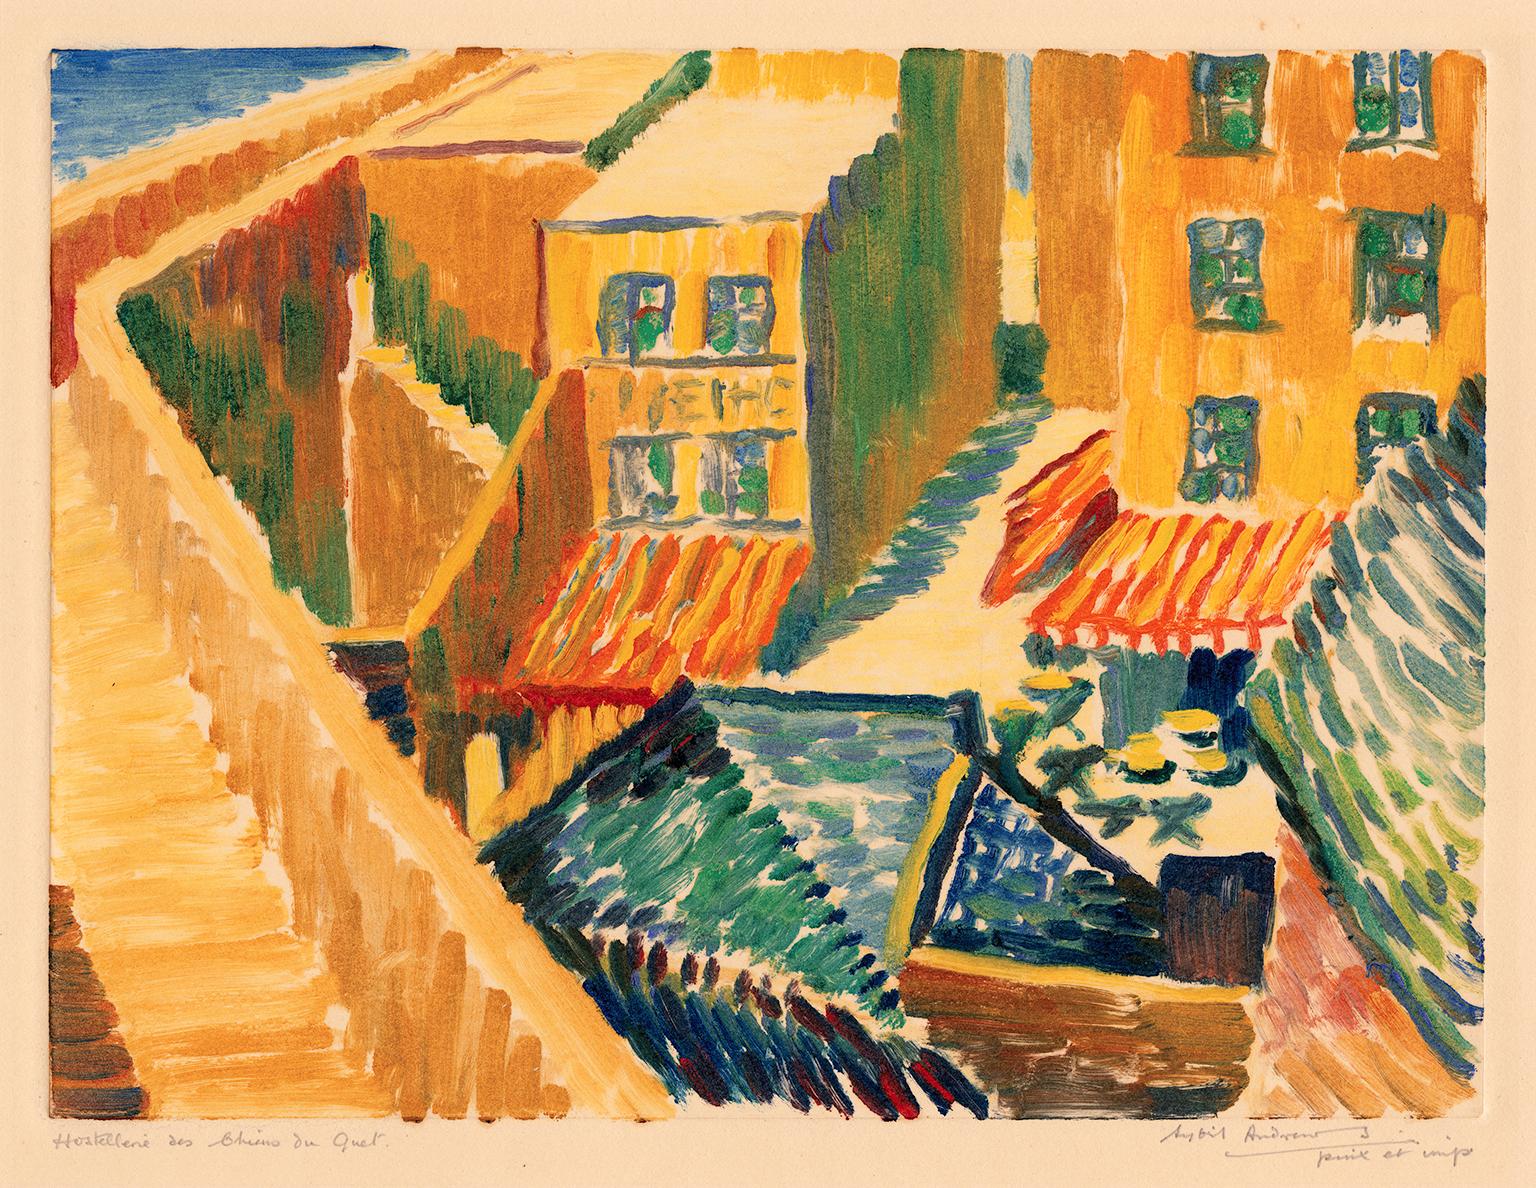 Sybil Andrews Figurative Print - 'Hostellerie des Chiens du Guet' — 1920s British Impressionism